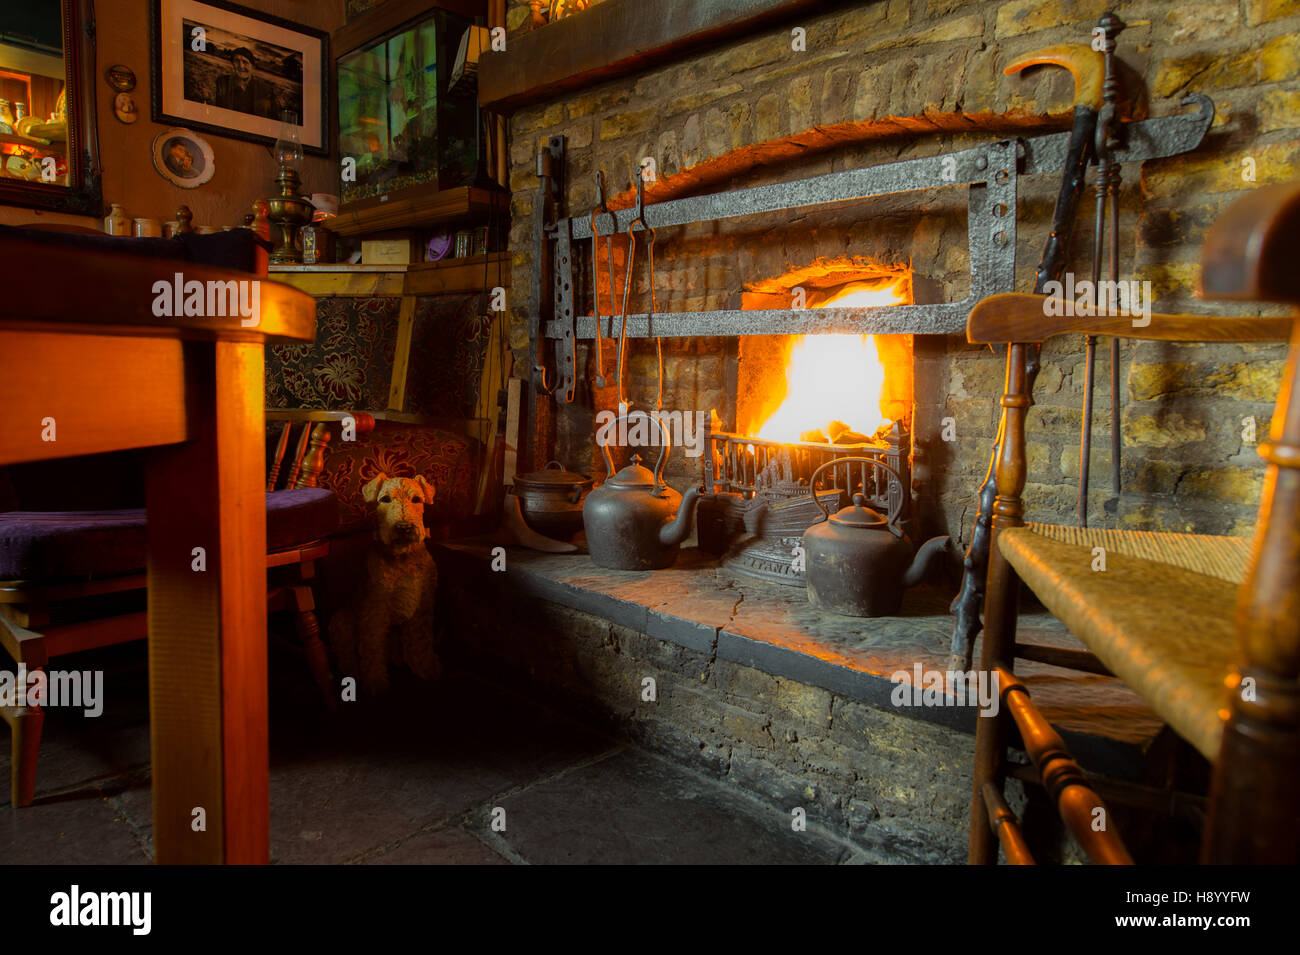 Cheminée de style rustique avec cheminée éclairée dans un pub de campagne en Irlande. Banque D'Images